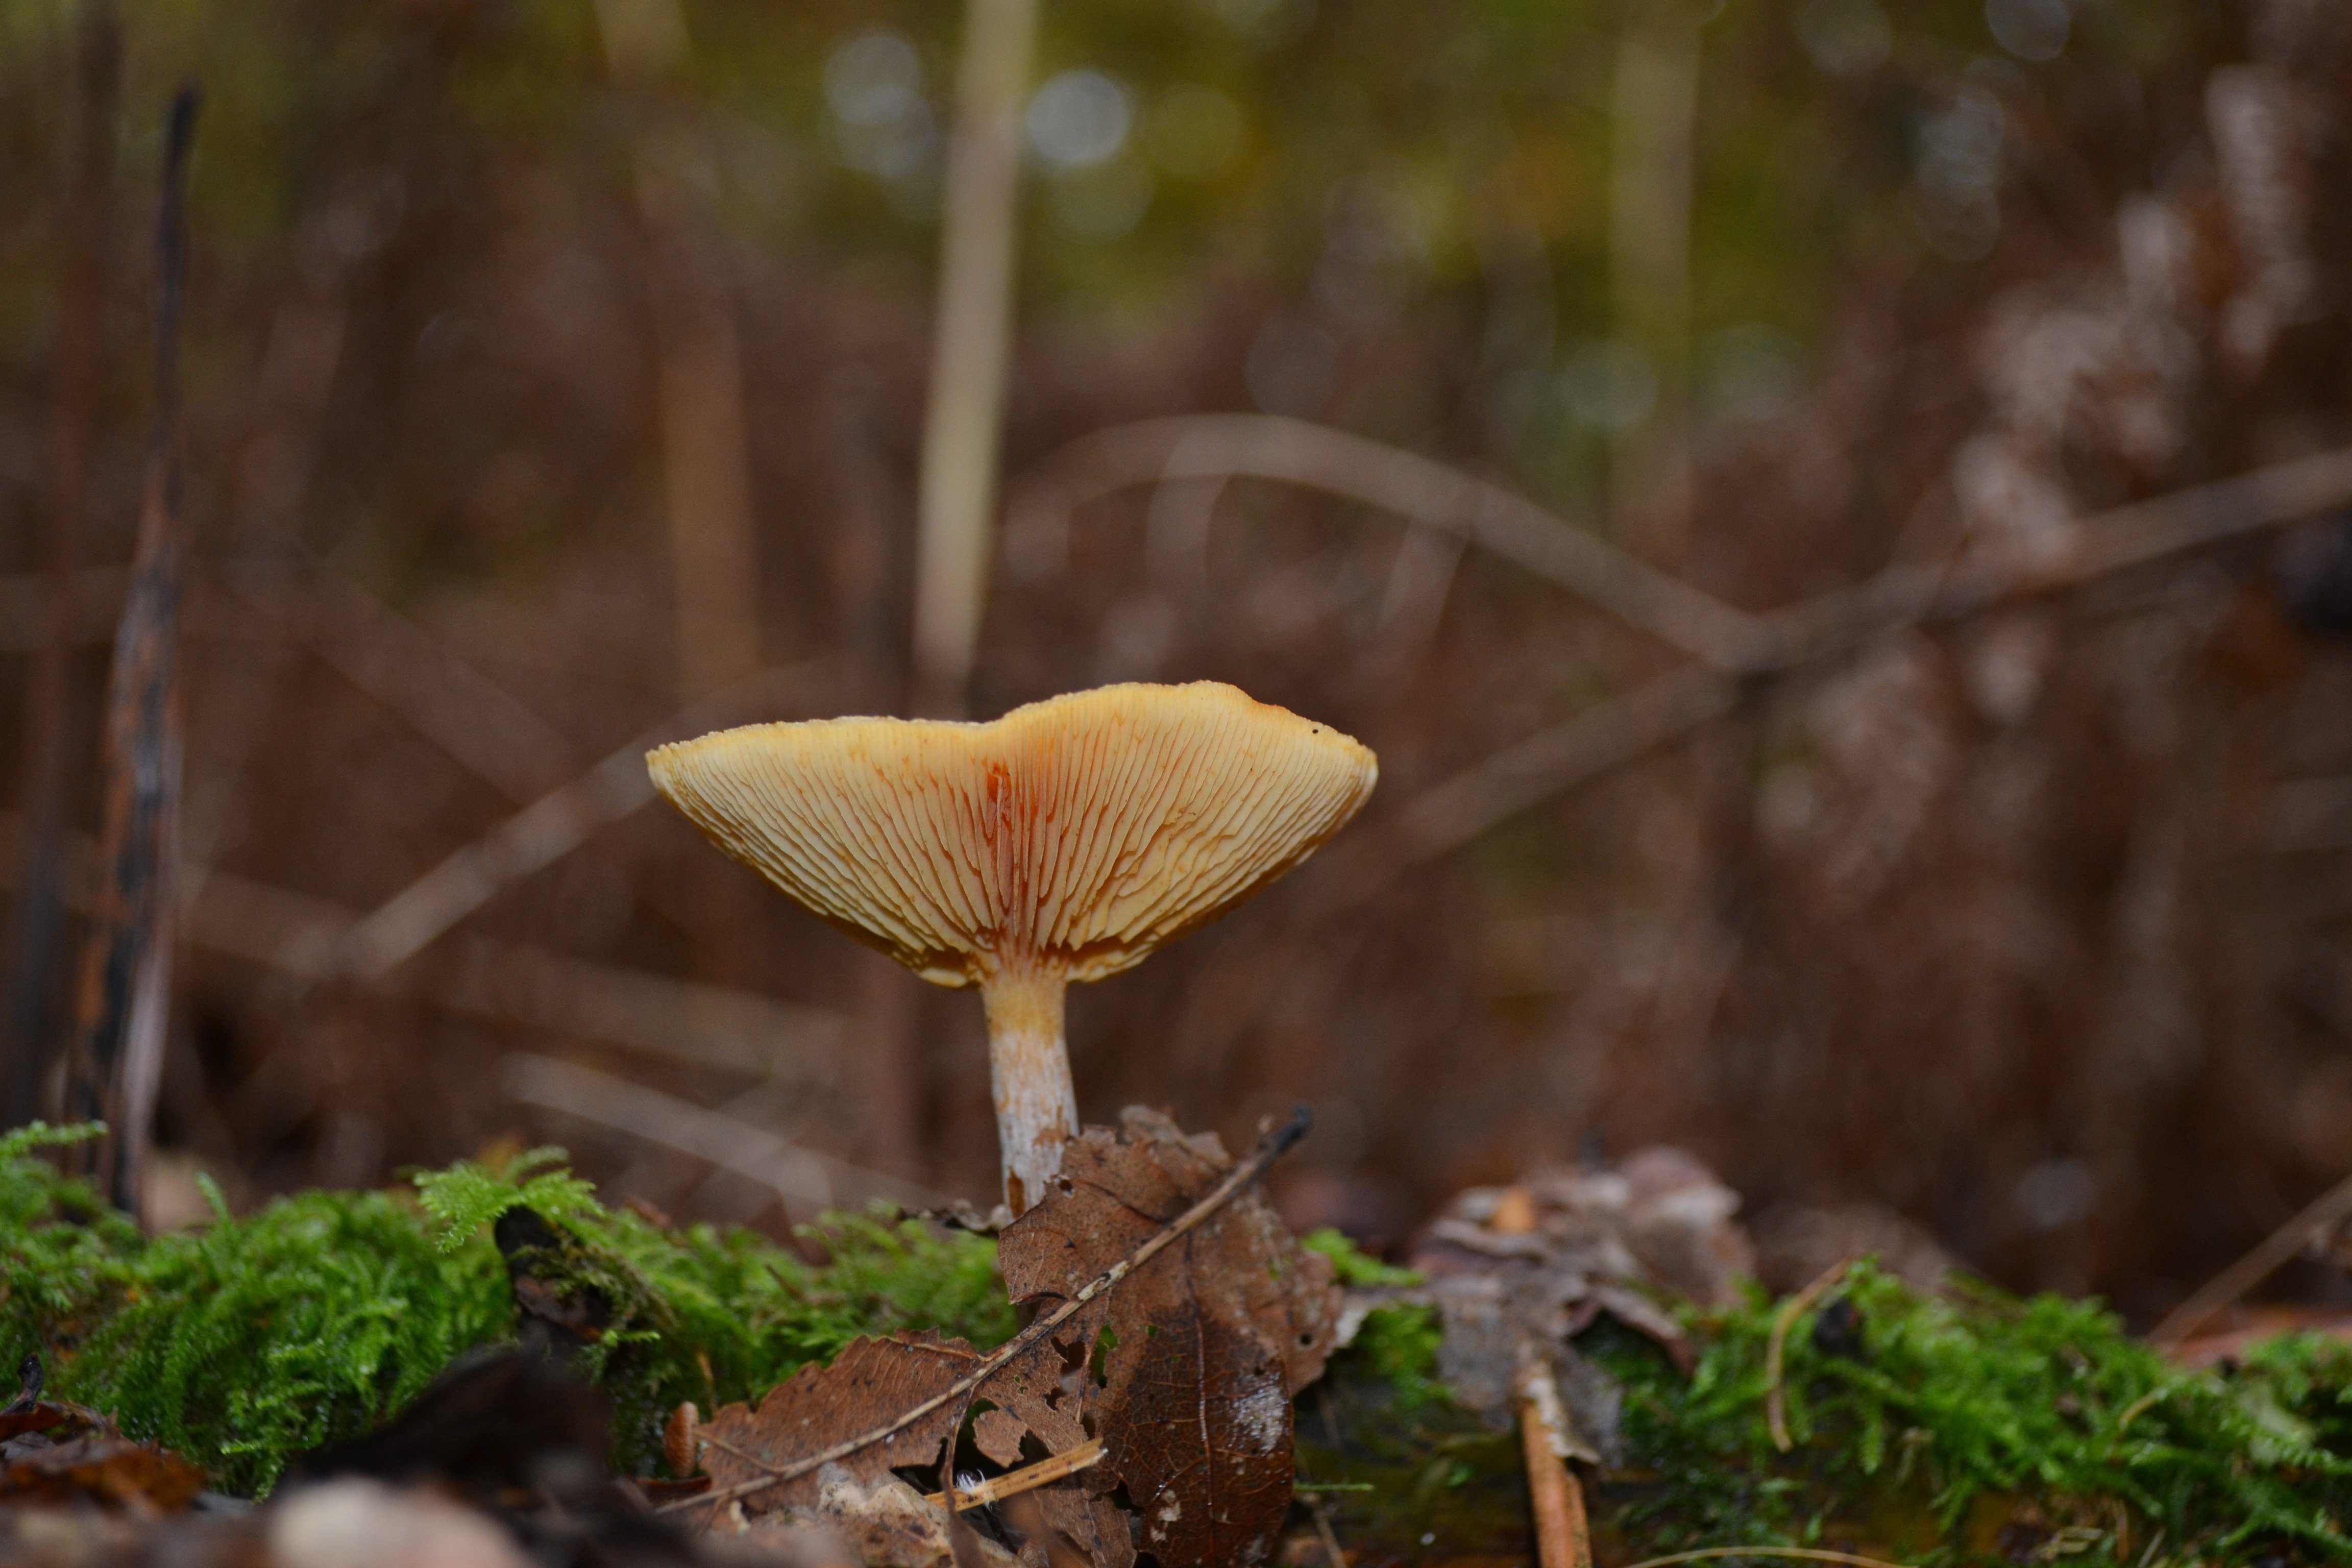 осенние пластинчатые грибы съедобные фото